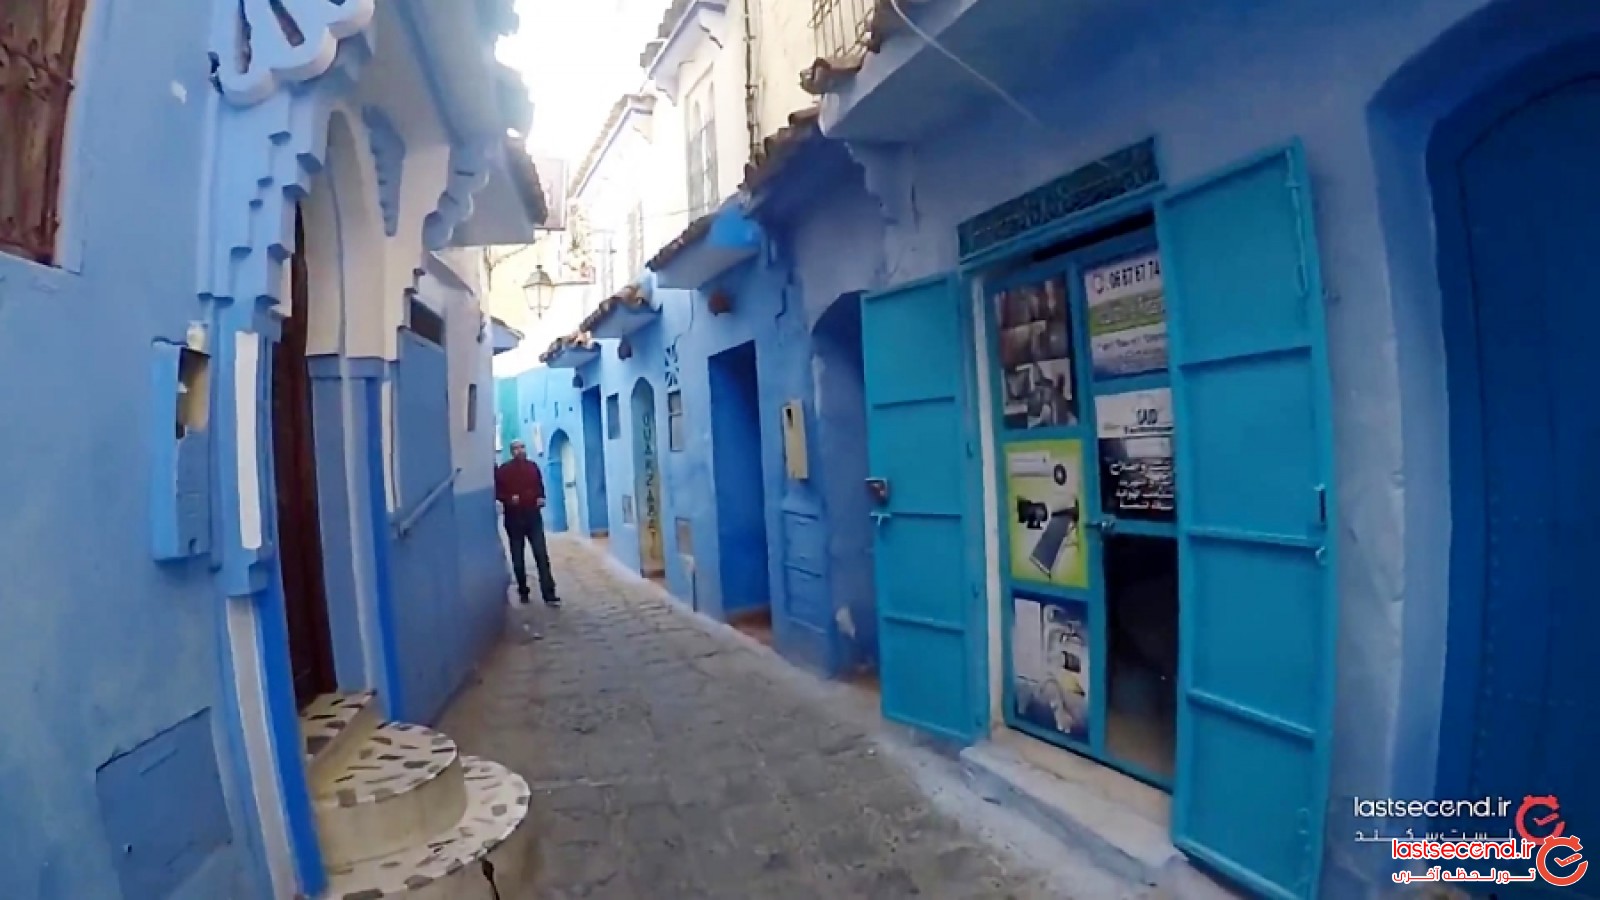 شفشاون مراکش، شهری به رنگ آبی